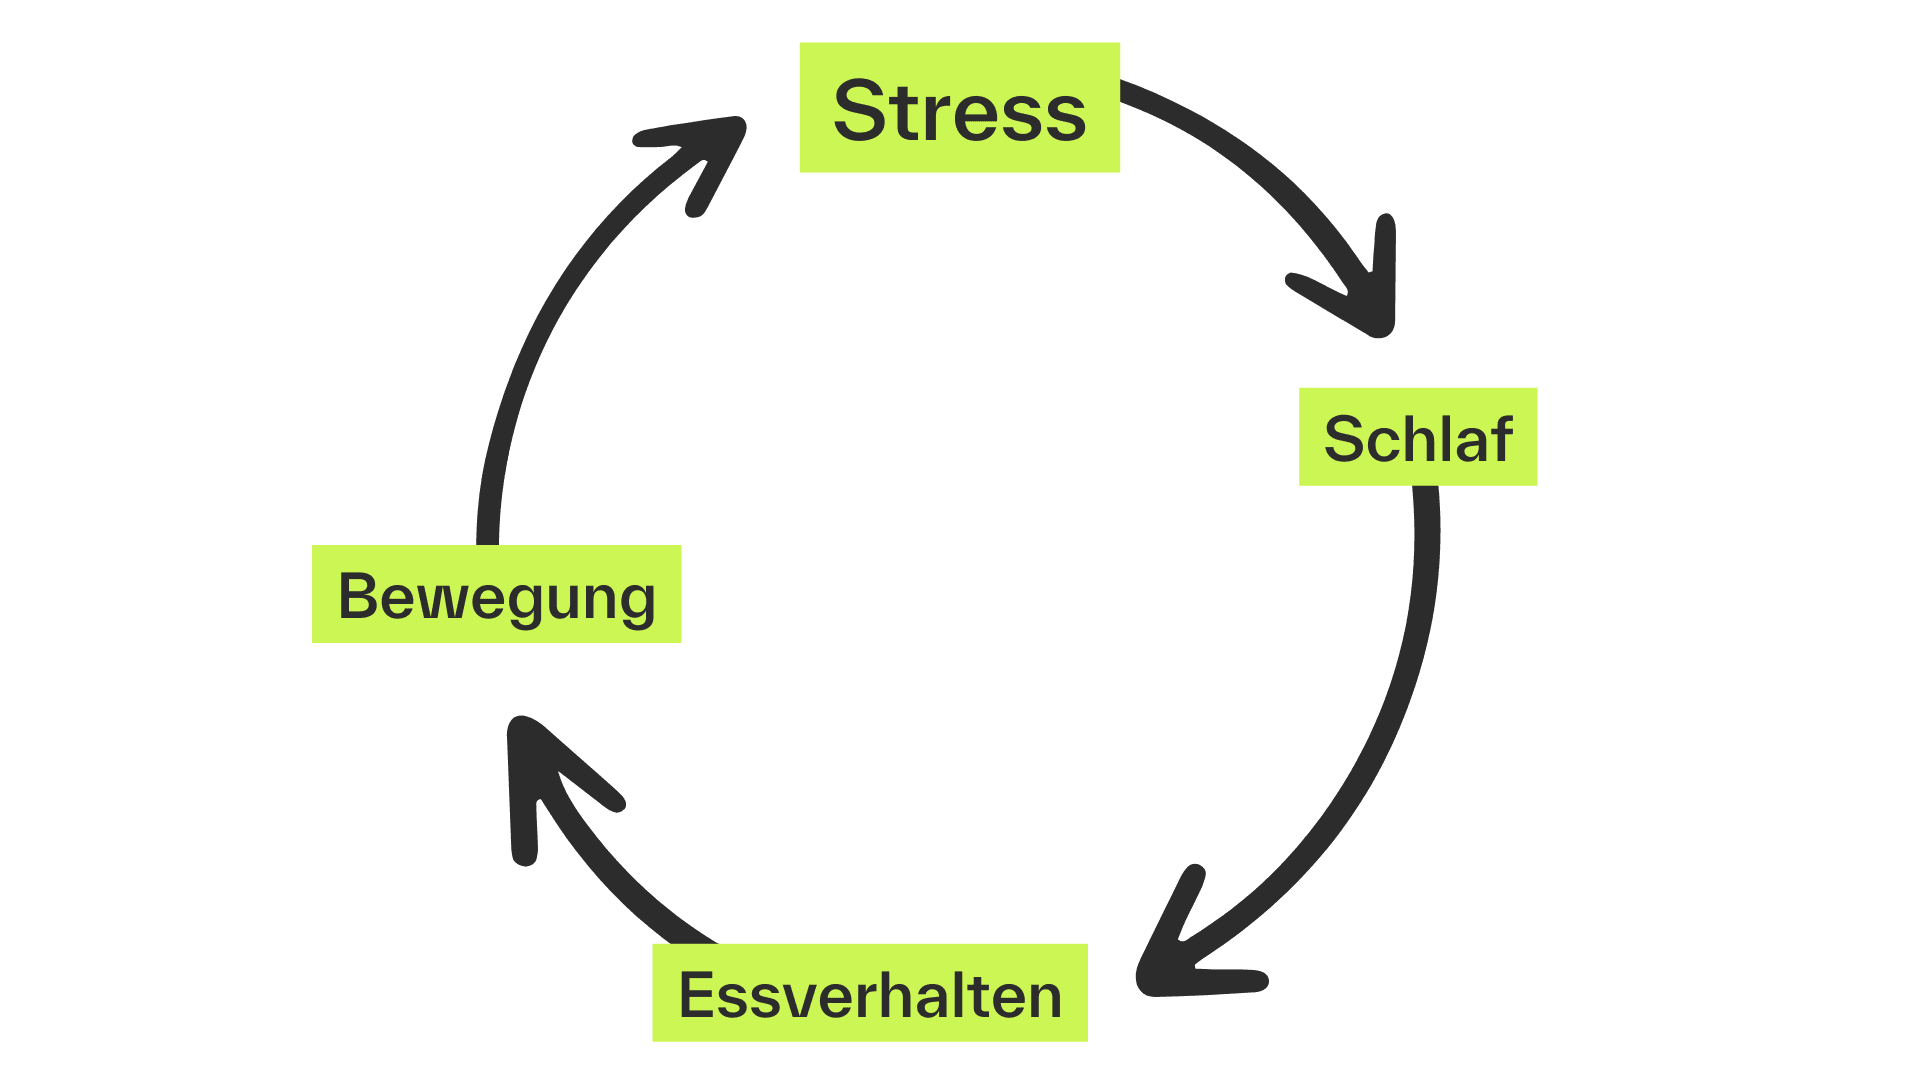 Eine Visualisierung des Stress-Kreislaufs